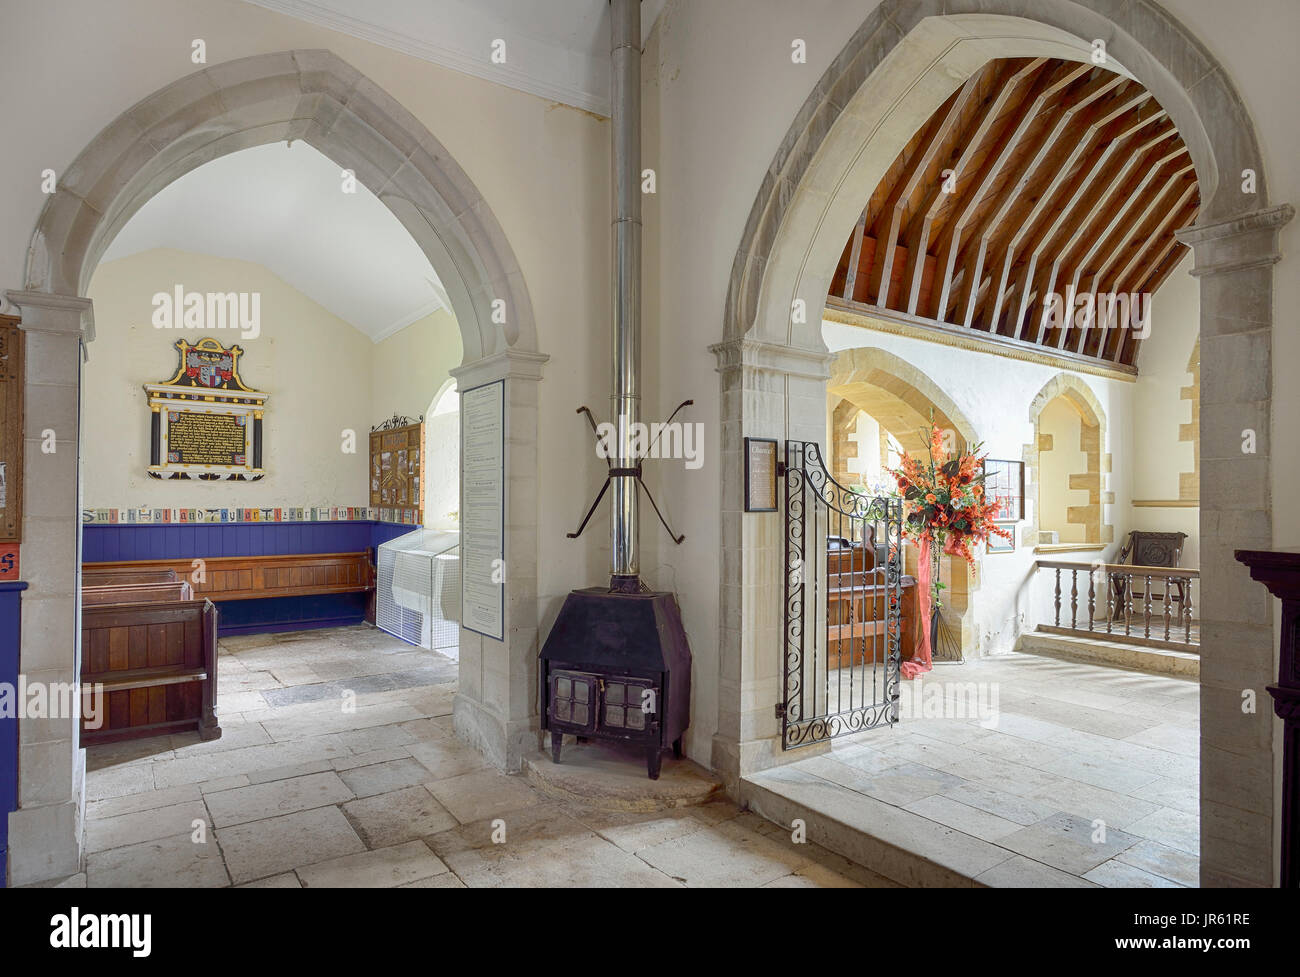 13. Jahrhundert Str. Marys Kirche, Bucht, Dorset Bucht wurde durch den Krieg Büro n 1943 zur militärischen Ausbildung requiriert und kehrte nie v Stockfoto